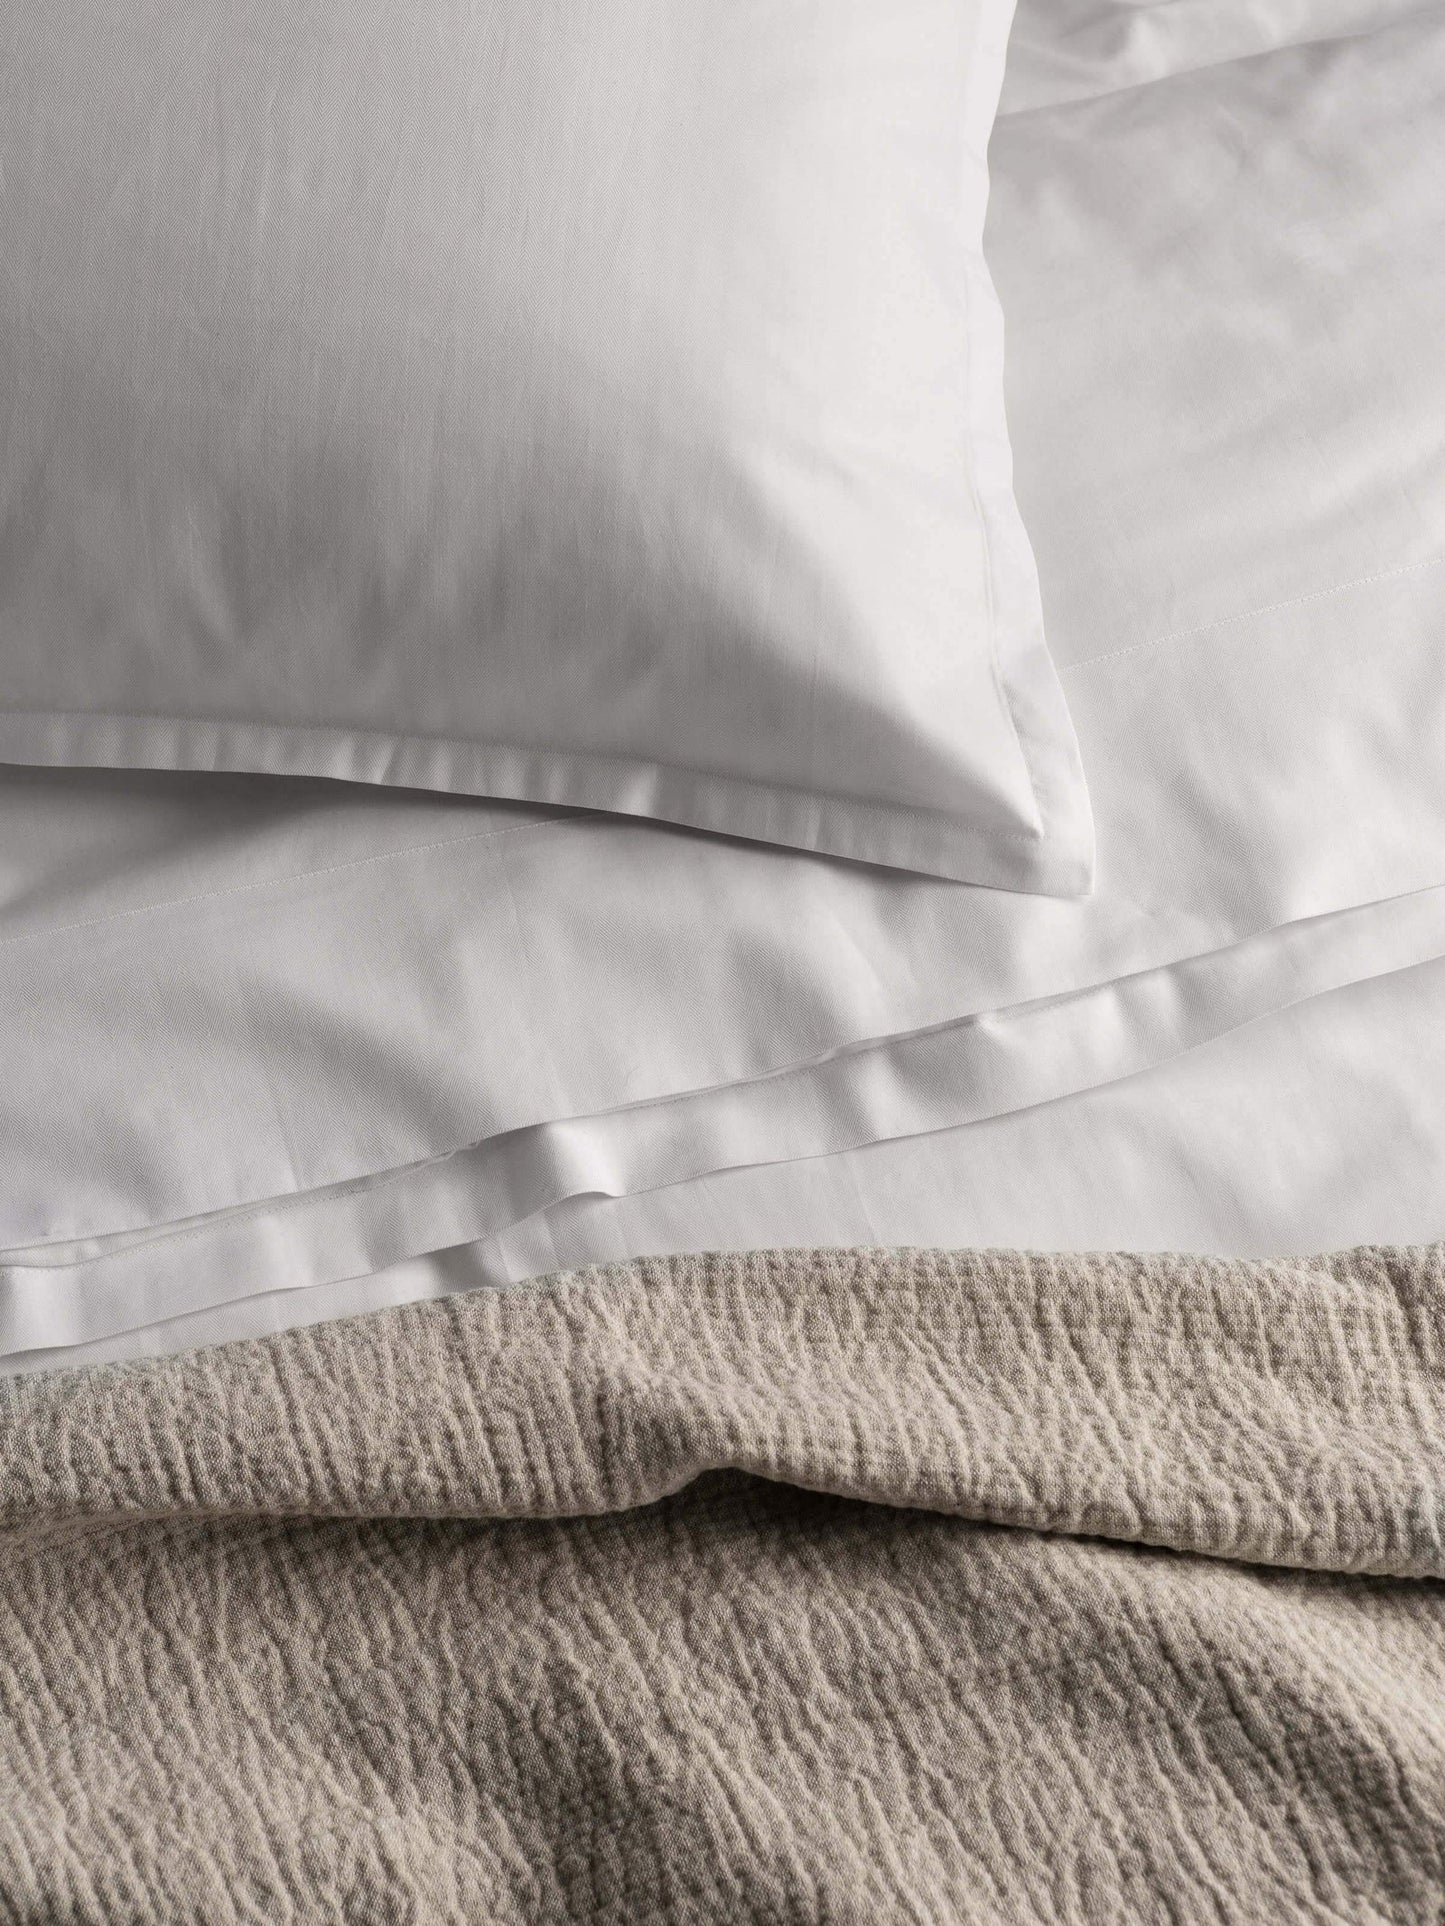 Capri Pure Cotton Standard Pillowcases